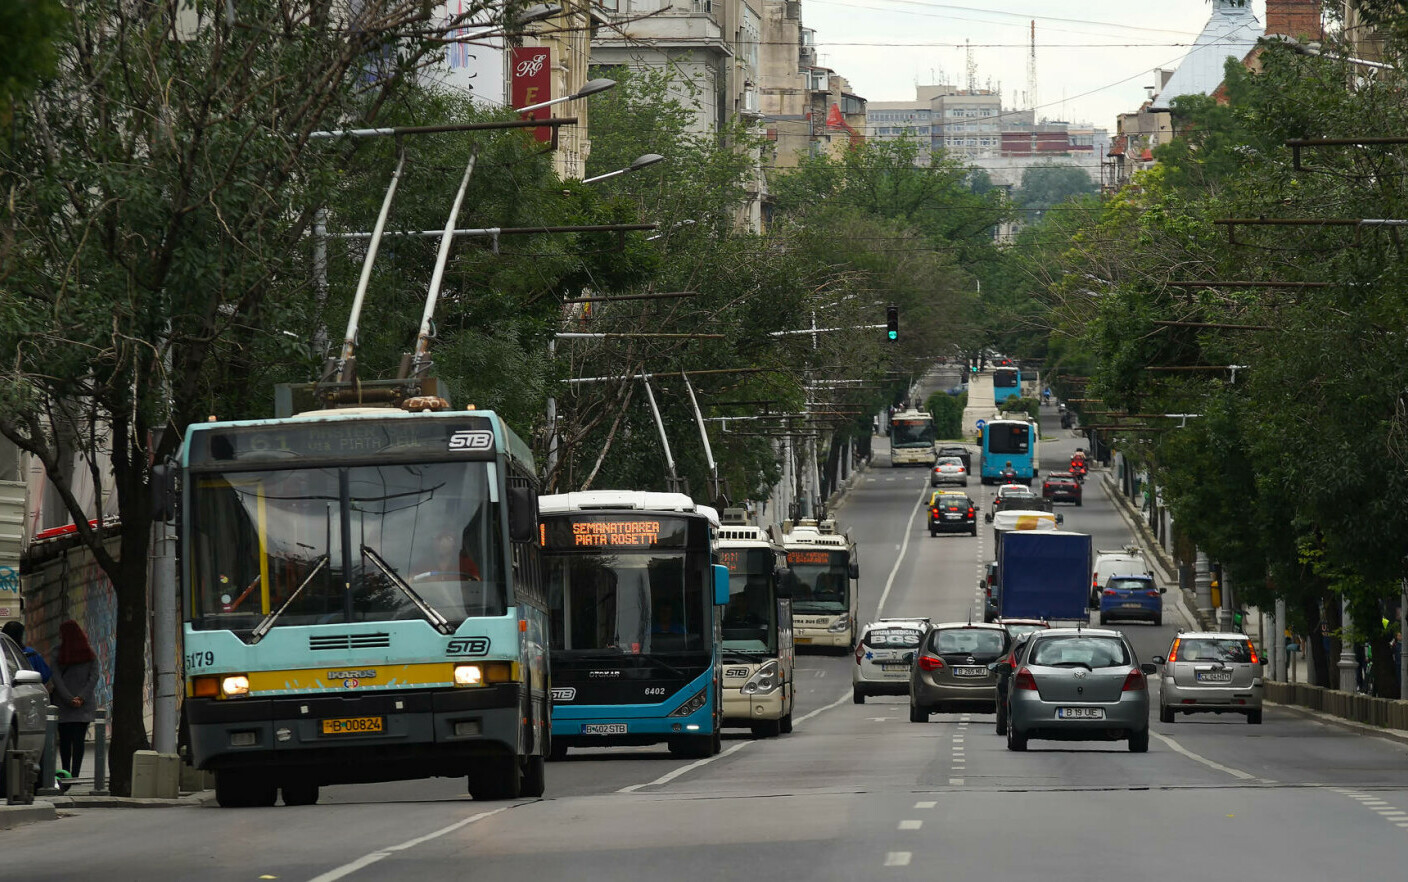 Aplicații pentru transportul comun din București. Care sunt cele mai folositoare